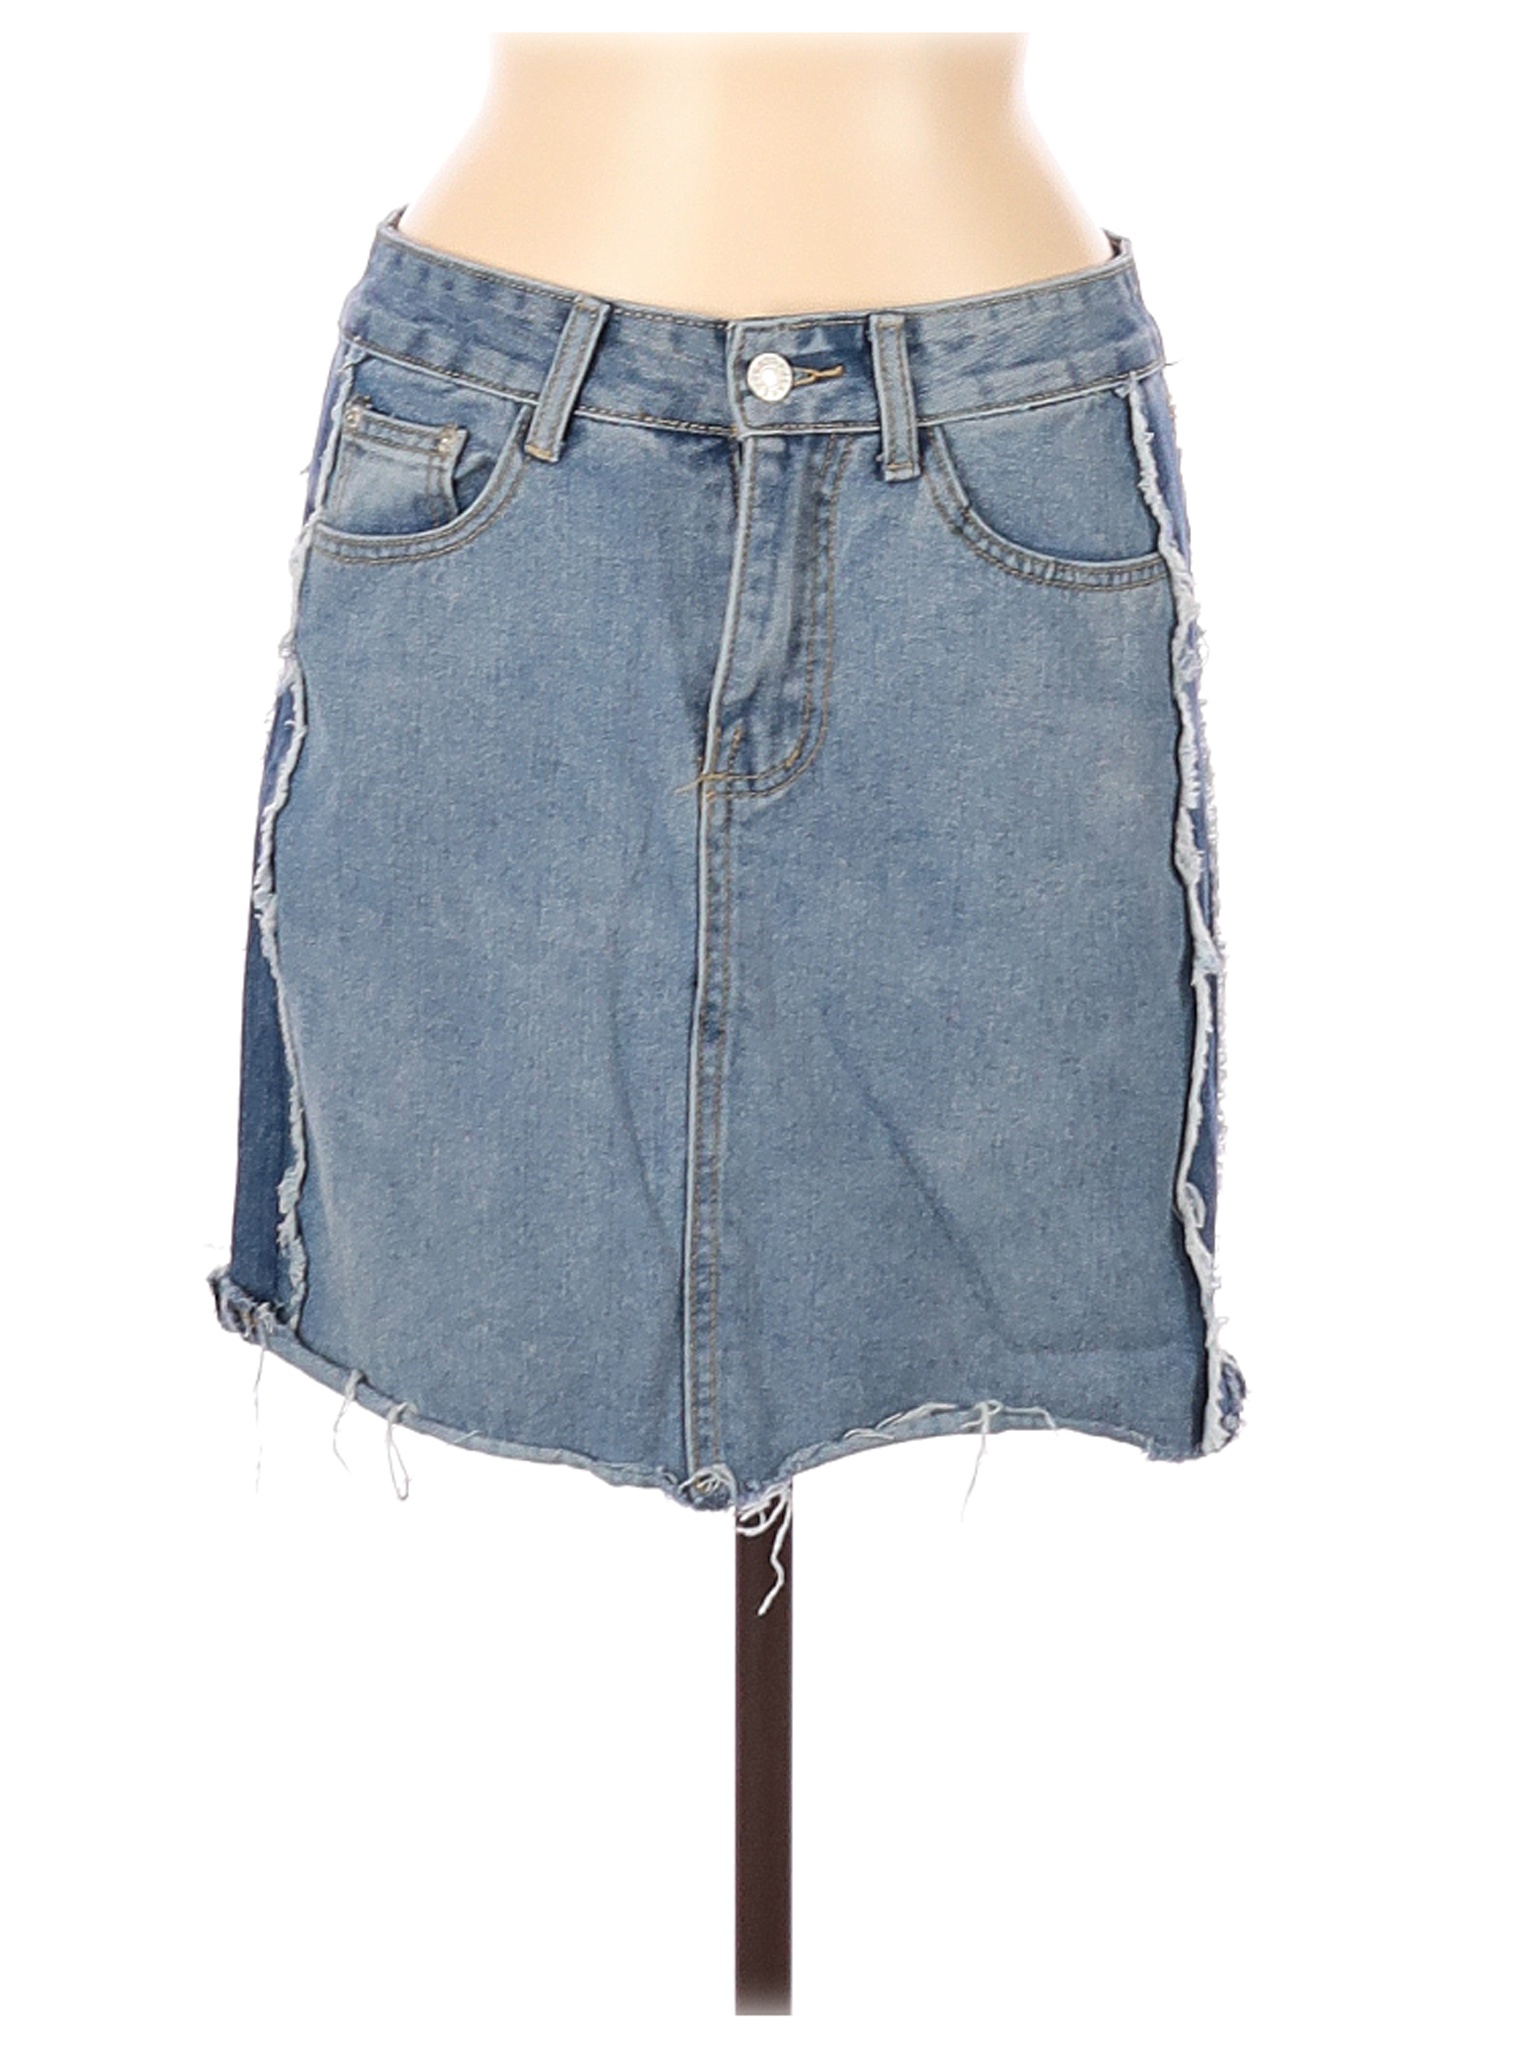 Chelsea & Violet Women Blue Denim Skirt M | eBay